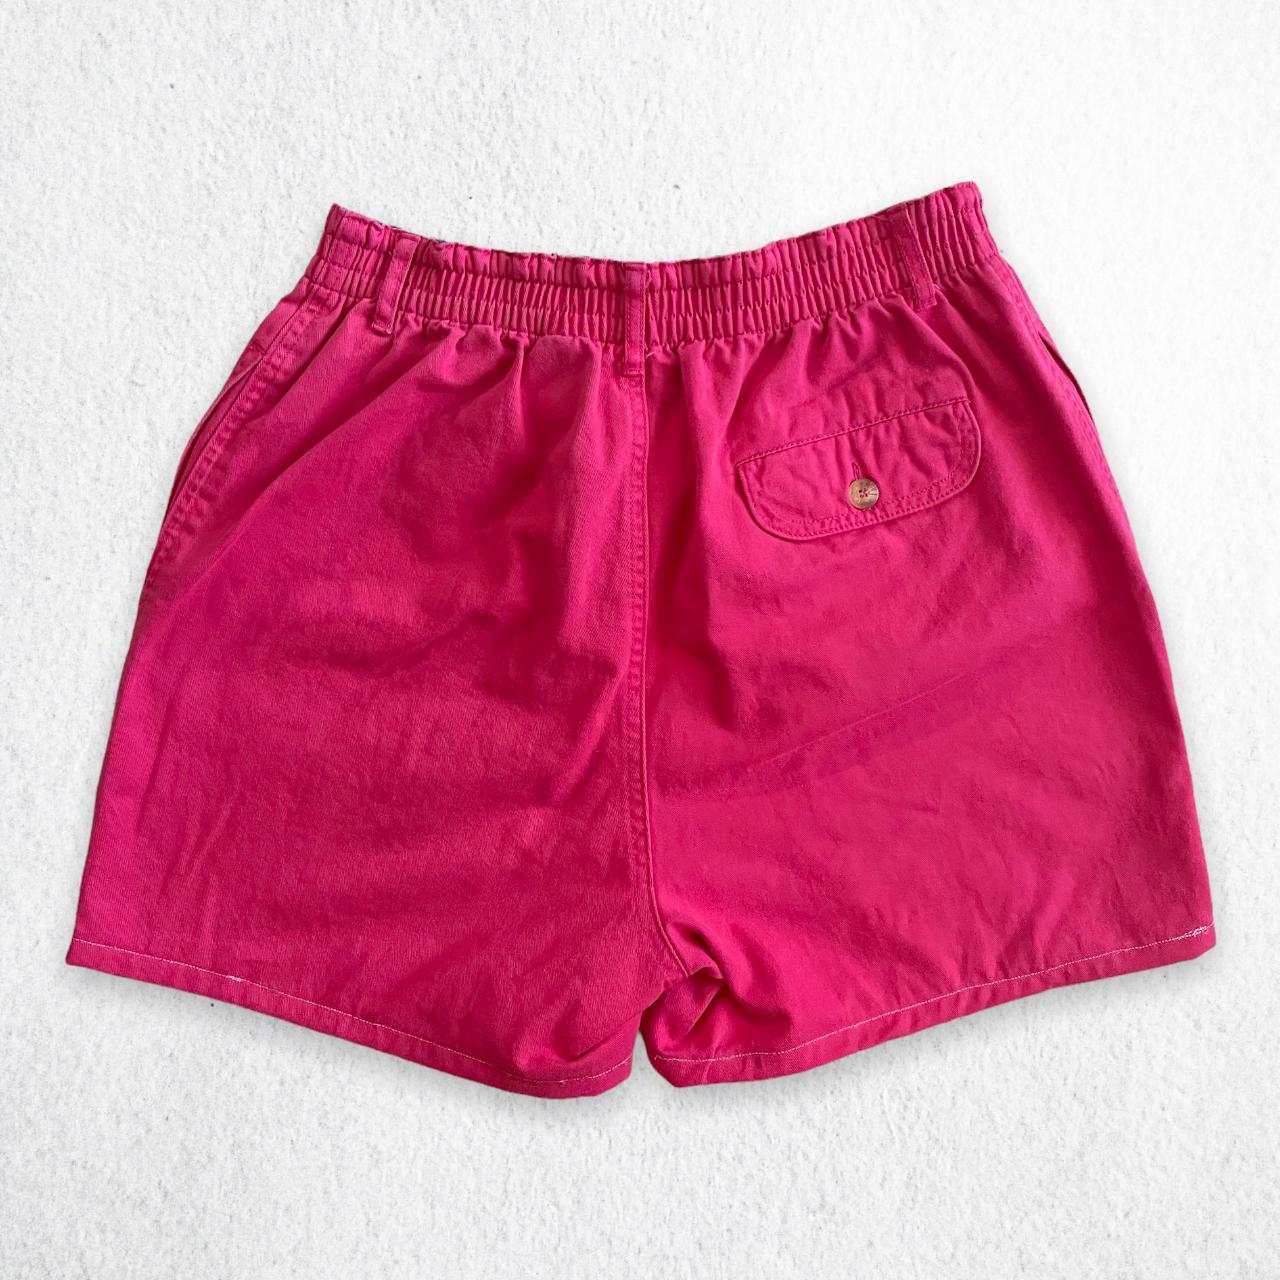 Regatta Women's Pink Shorts (3)